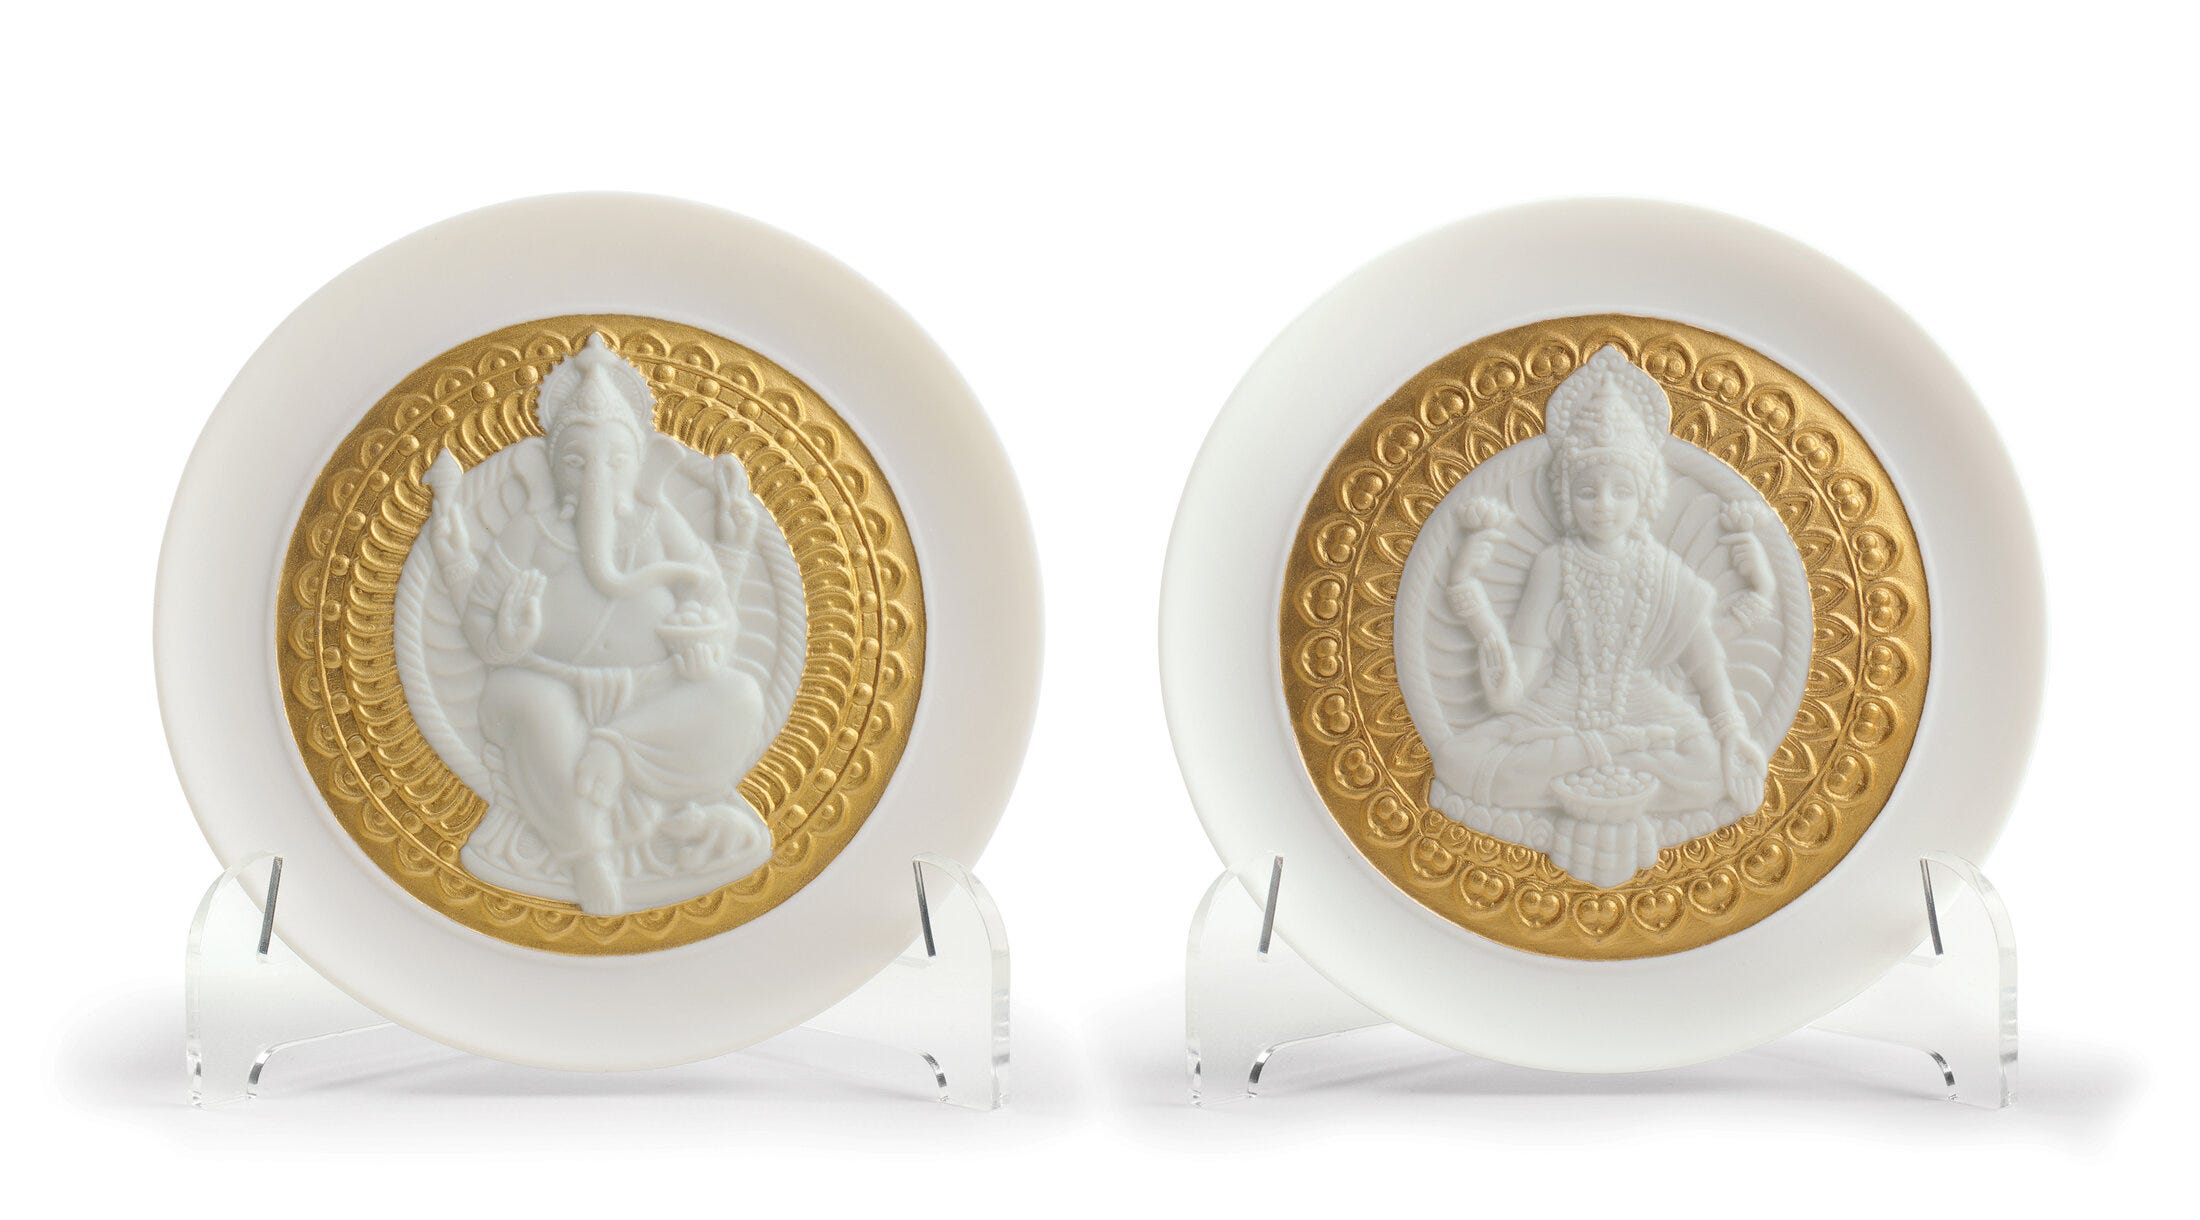 Goddes Lakshmi and Lord Ganesha Decorative Plates Set. Golden Lustre